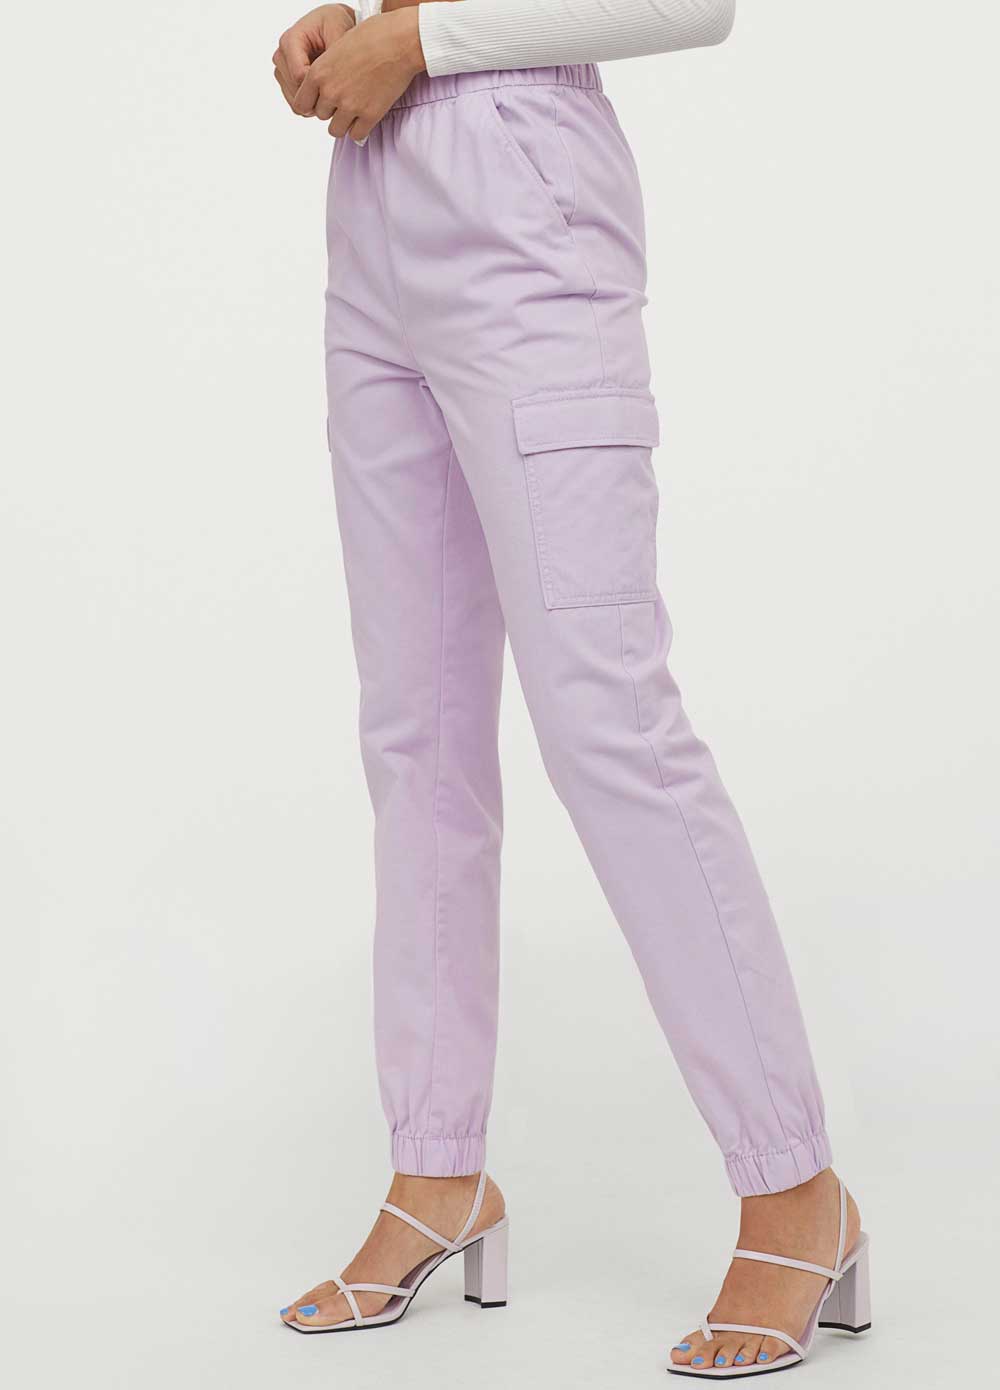 Pantaloni H&M primavera estate 2020